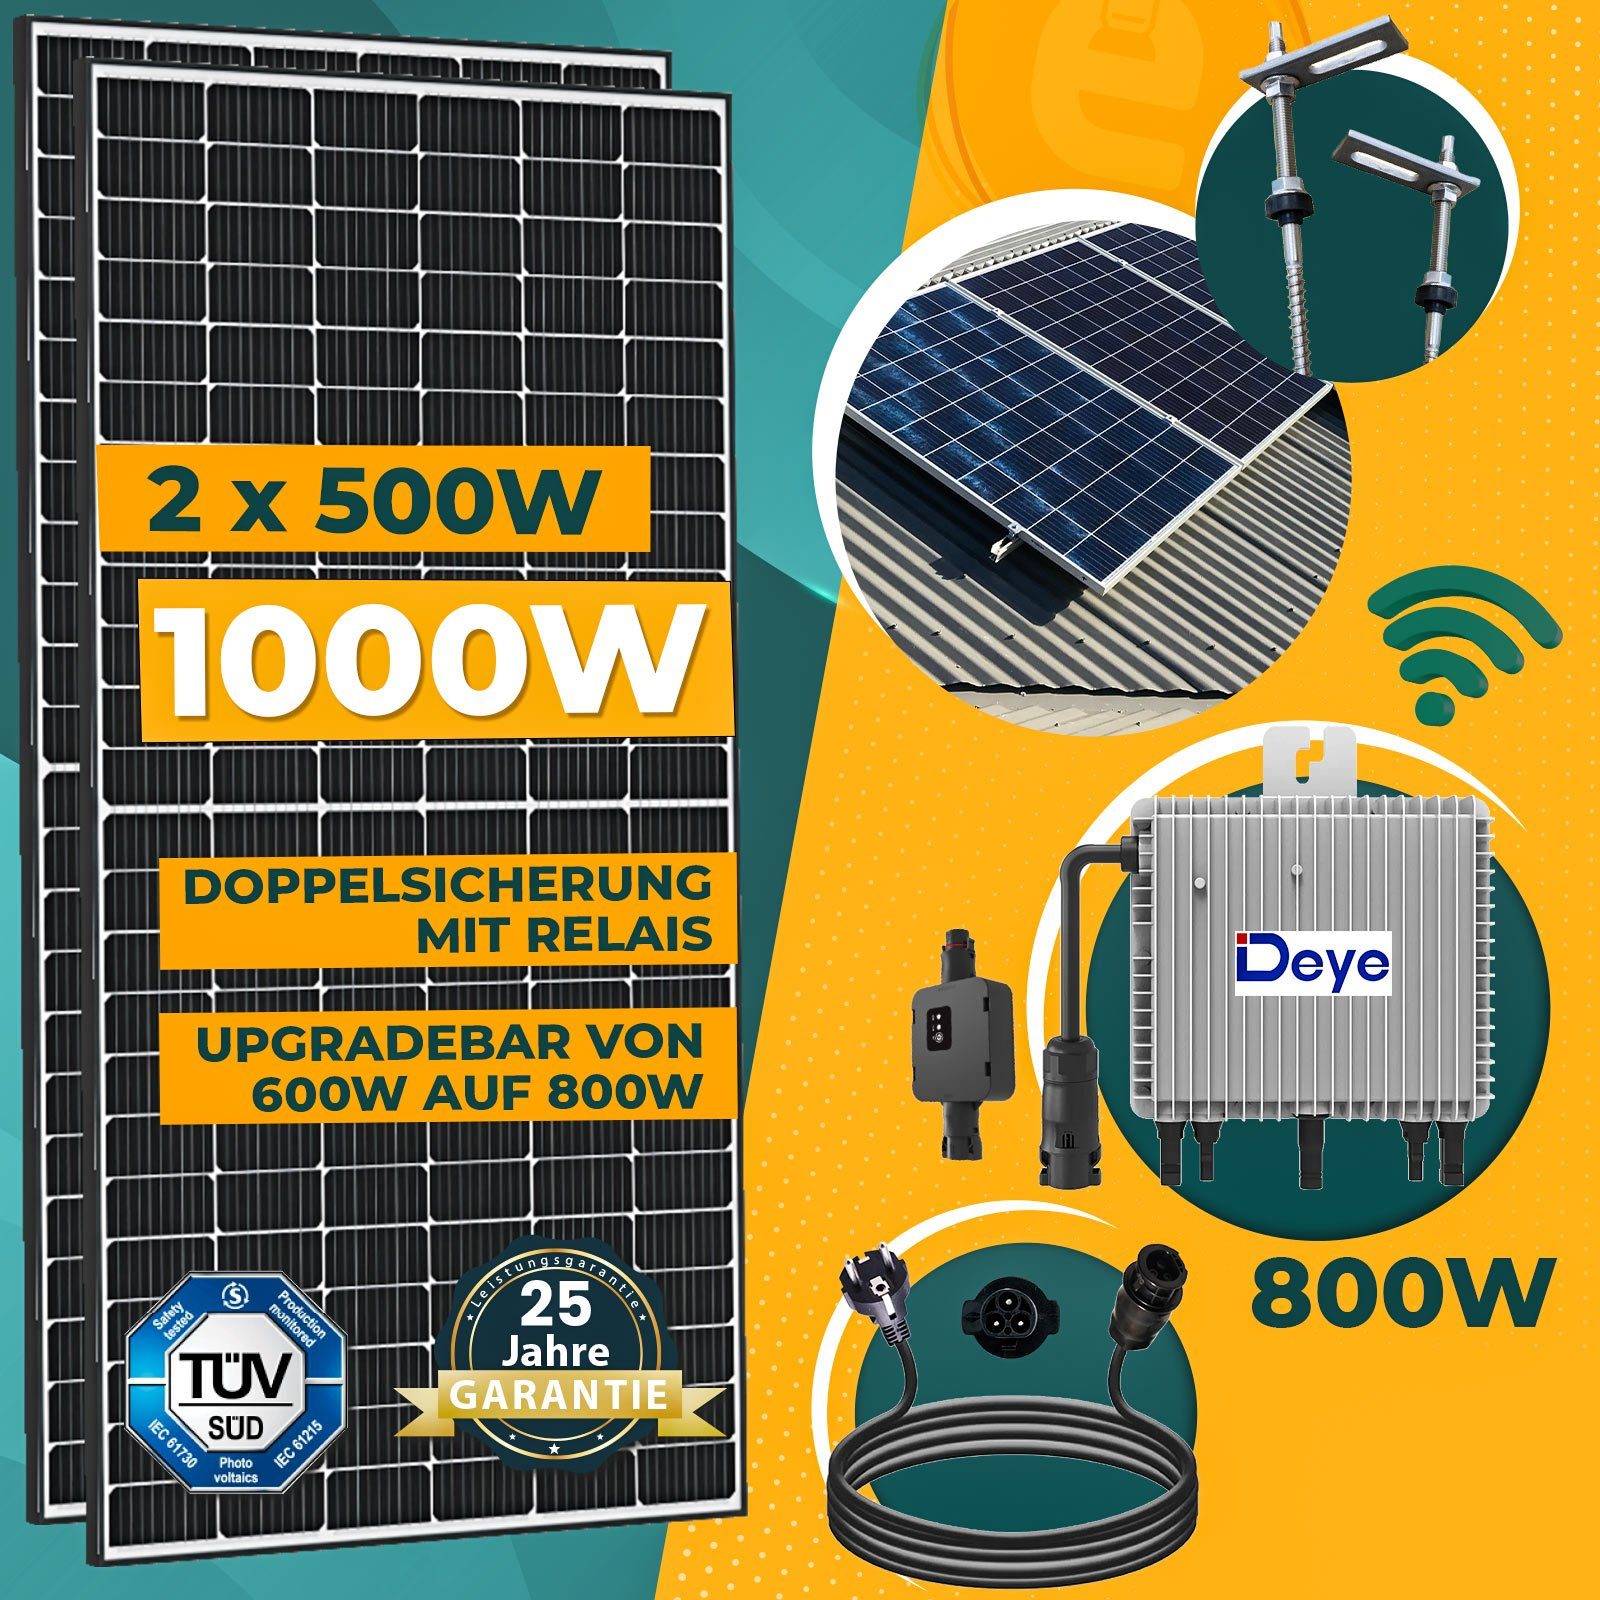 WIFI PV-Montage 800W mit und Deye Relais, 10M Solaranlage Balkonkraftwerk Generation Schuko Solarmodule, Stecker Neu Stockschrauben inkl. Wechselrichter Komplettset 1000W enprovesolar 500W